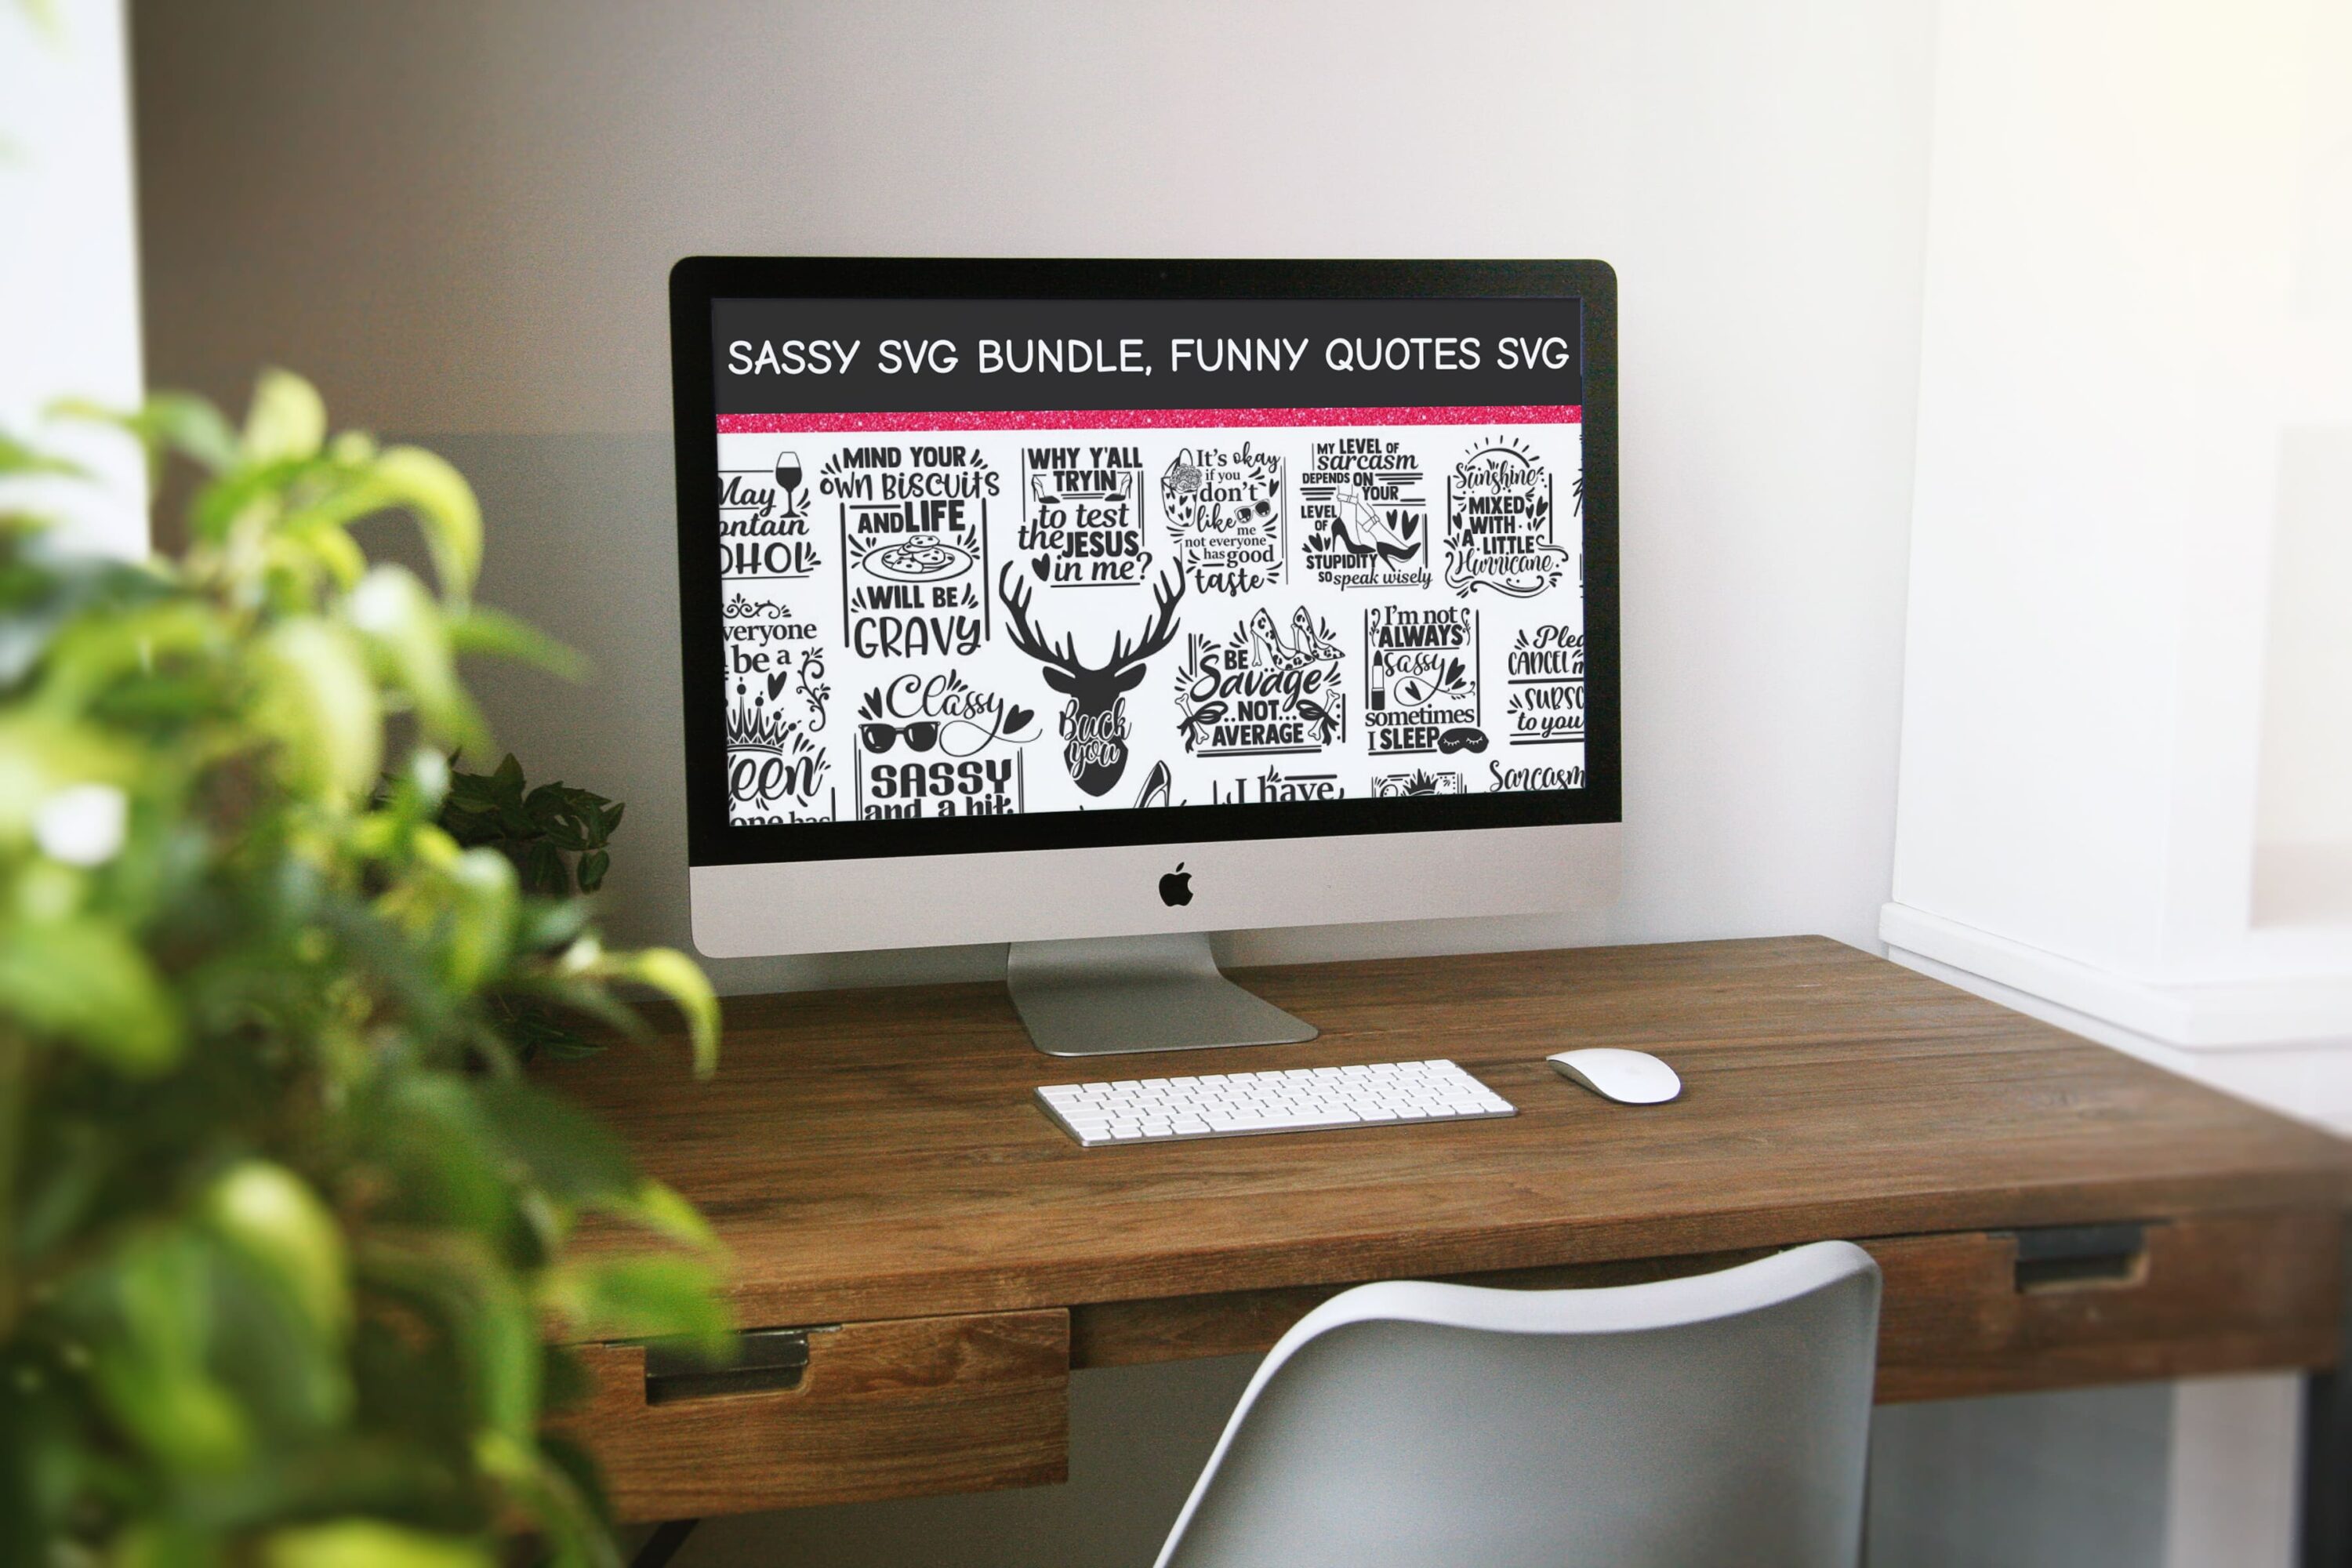 Sassy SVG Bundle, funny quotes svg - desktop.